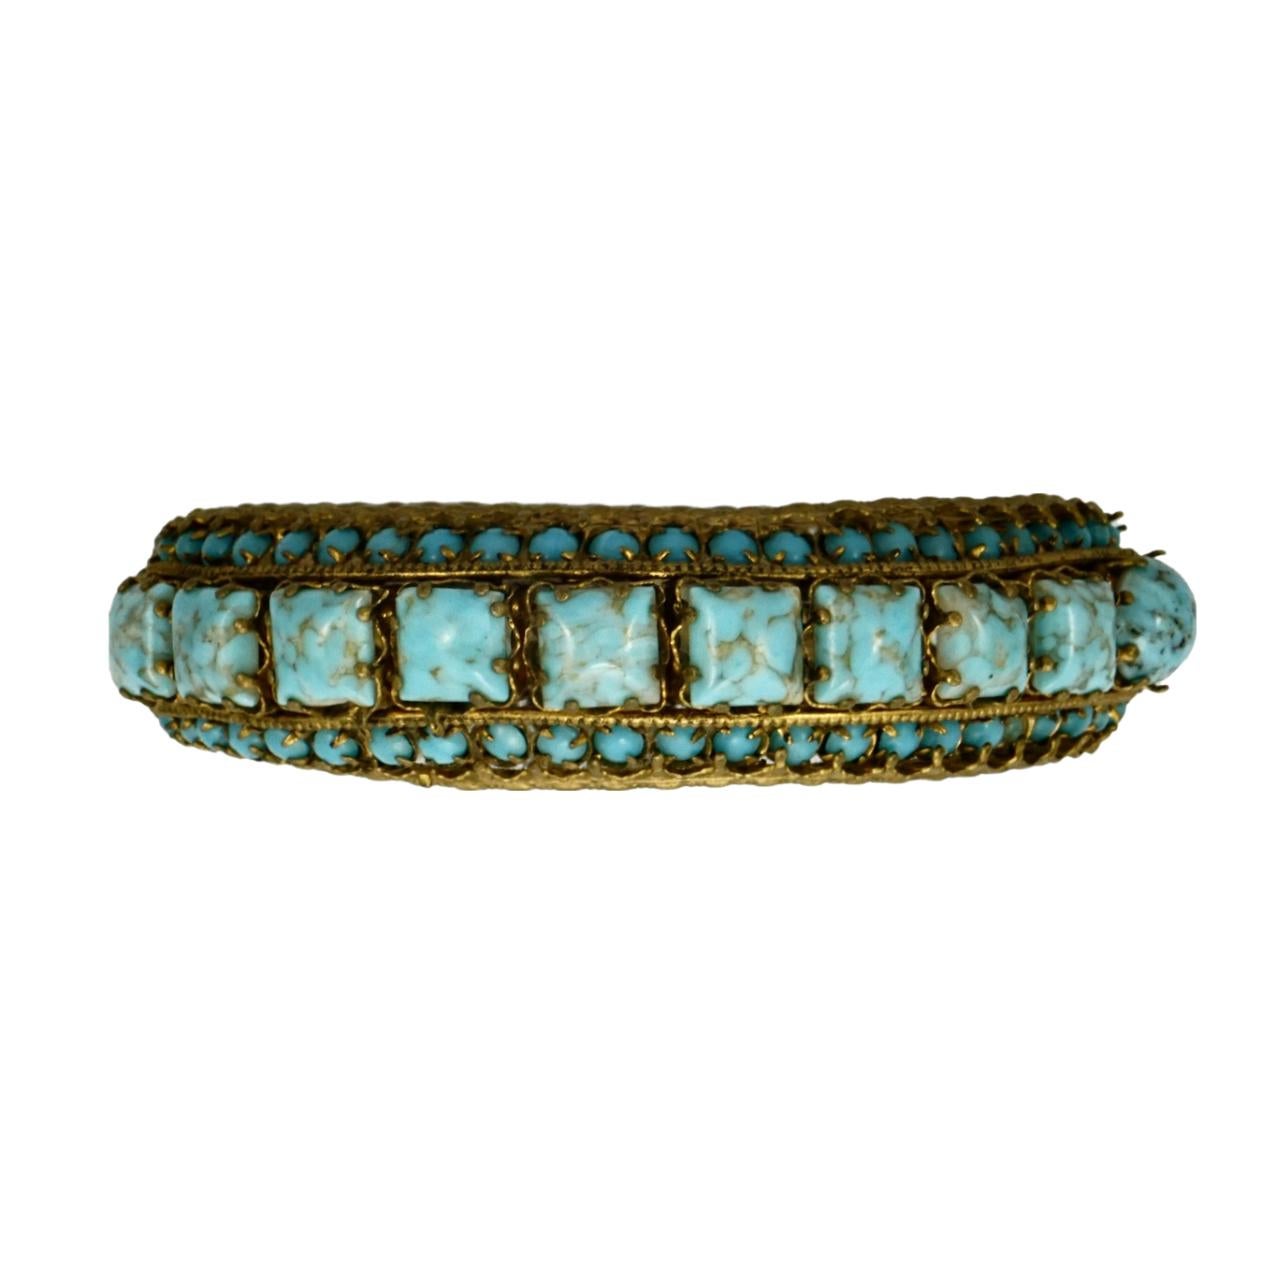 Fabuleux bracelet orné en plaqué or et émail noir serti de pierres Hubbell (fausse turquoise). Le diamètre intérieur mesure 6,1 cm / 2,4 pouces et la largeur intérieure 5 cm / 1,9 pouces. La largeur est de 1,9 cm.

Le placage d'or est usé et l'usure